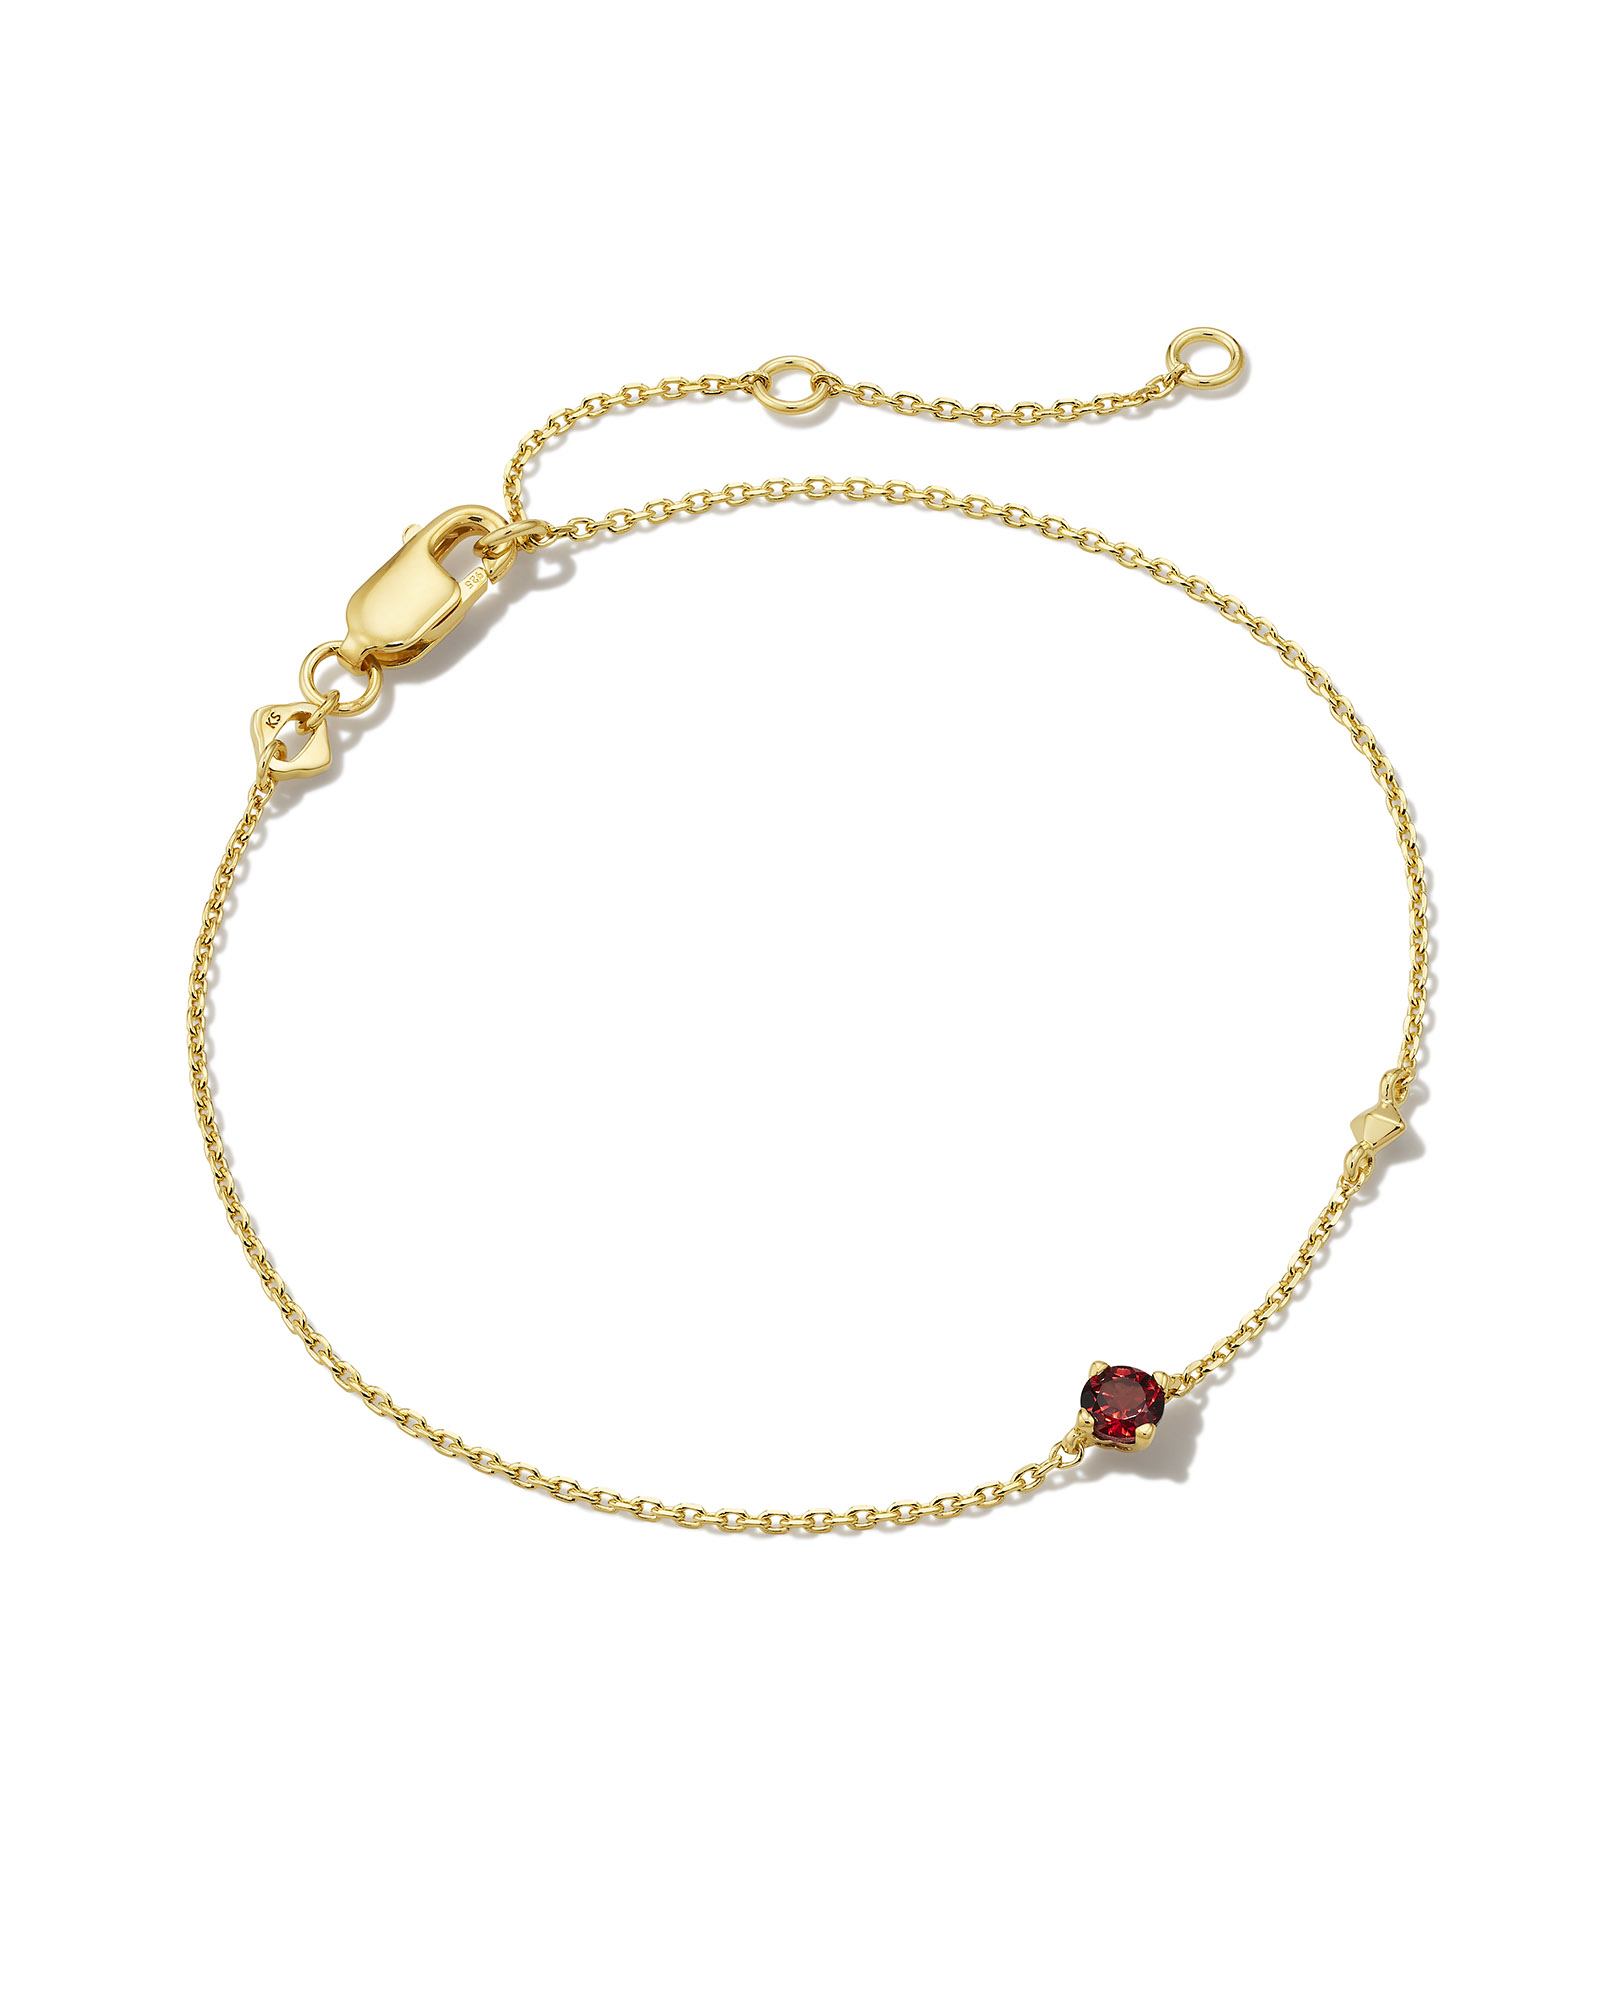 Maisie 18k Gold Vermeil Delicate Chain Bracelet in Red Garnet